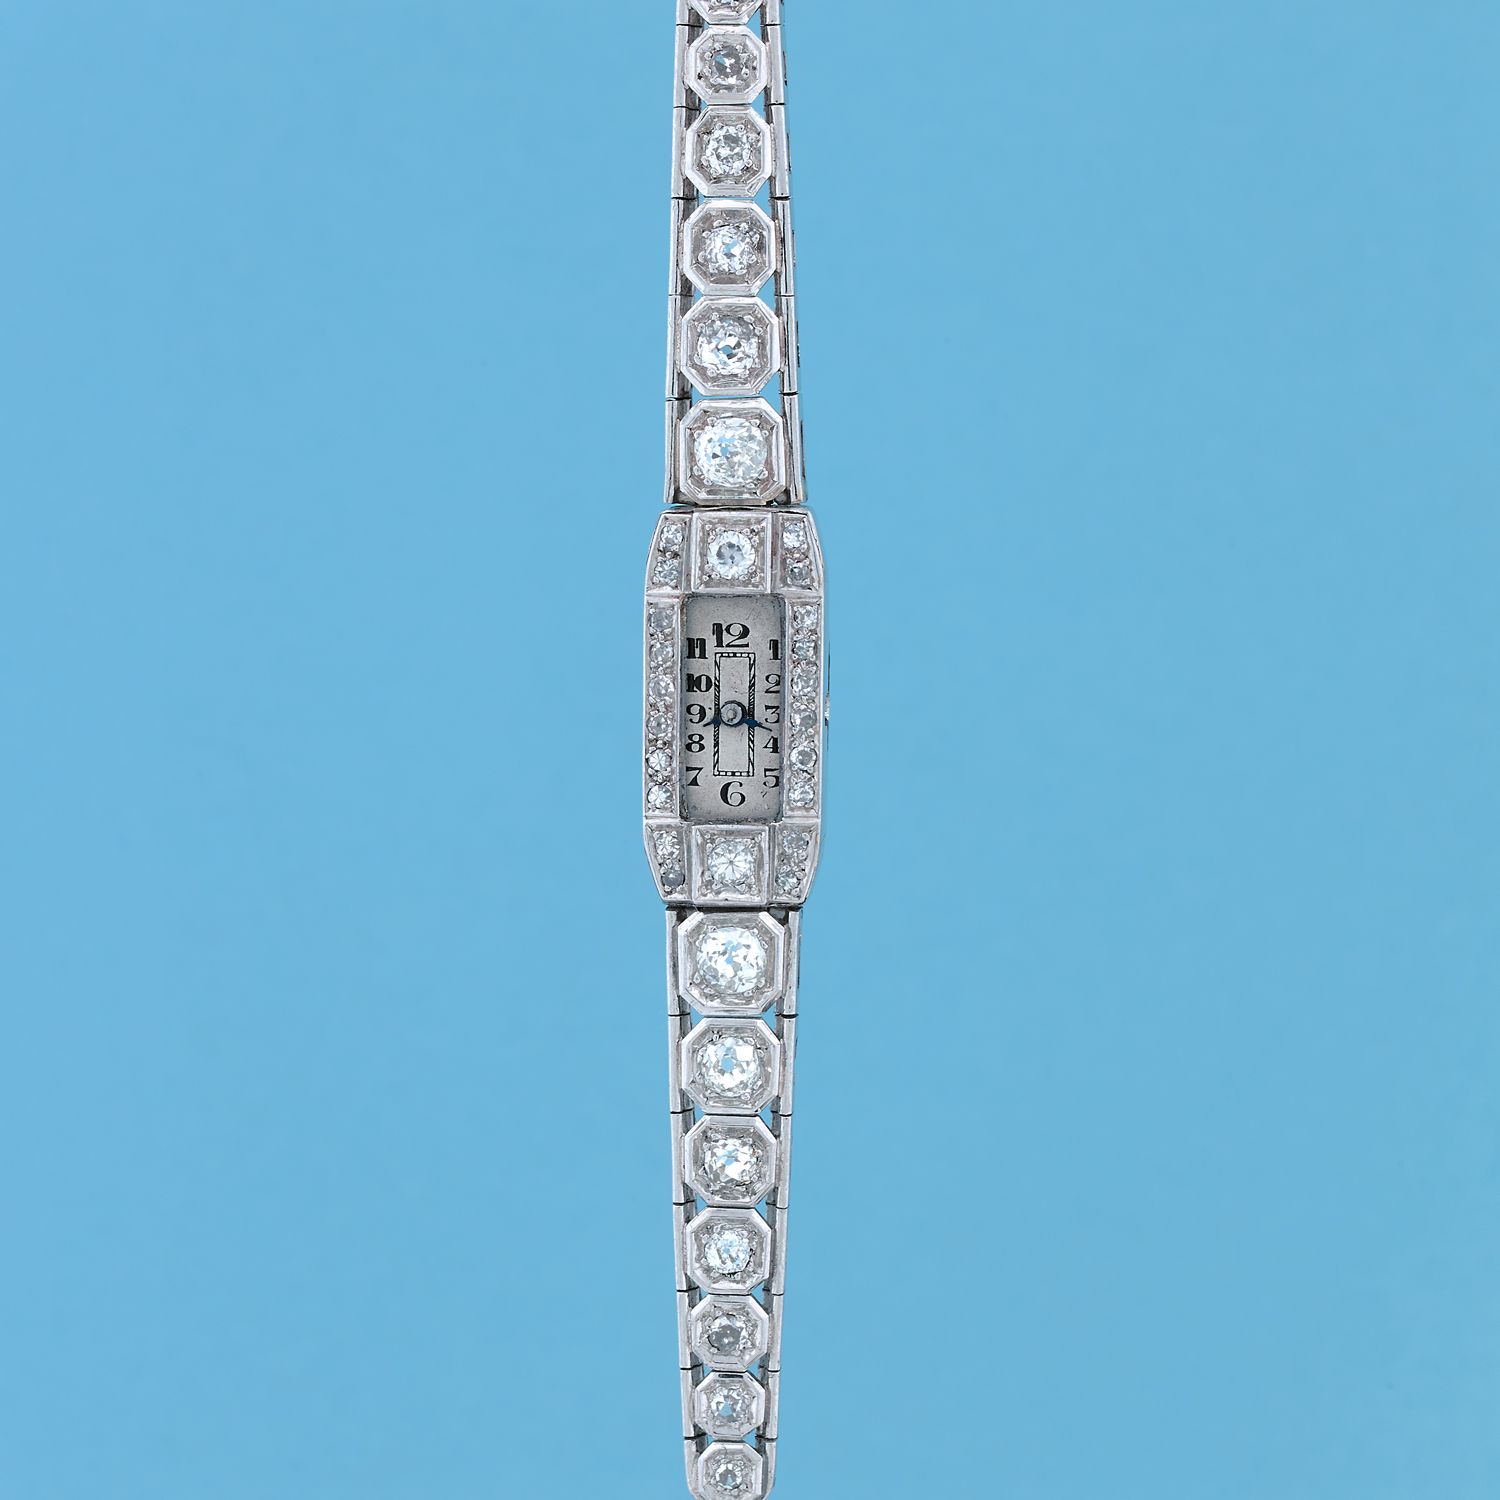 Null 艺术装饰手表
约1930年。
铂金女士腕表。表壳上铺设了老式切割钻石。屏幕破损，没有上弦机制。白色表盘上有彩绘数字。机械机芯，手动上链。

直径：10&hellip;